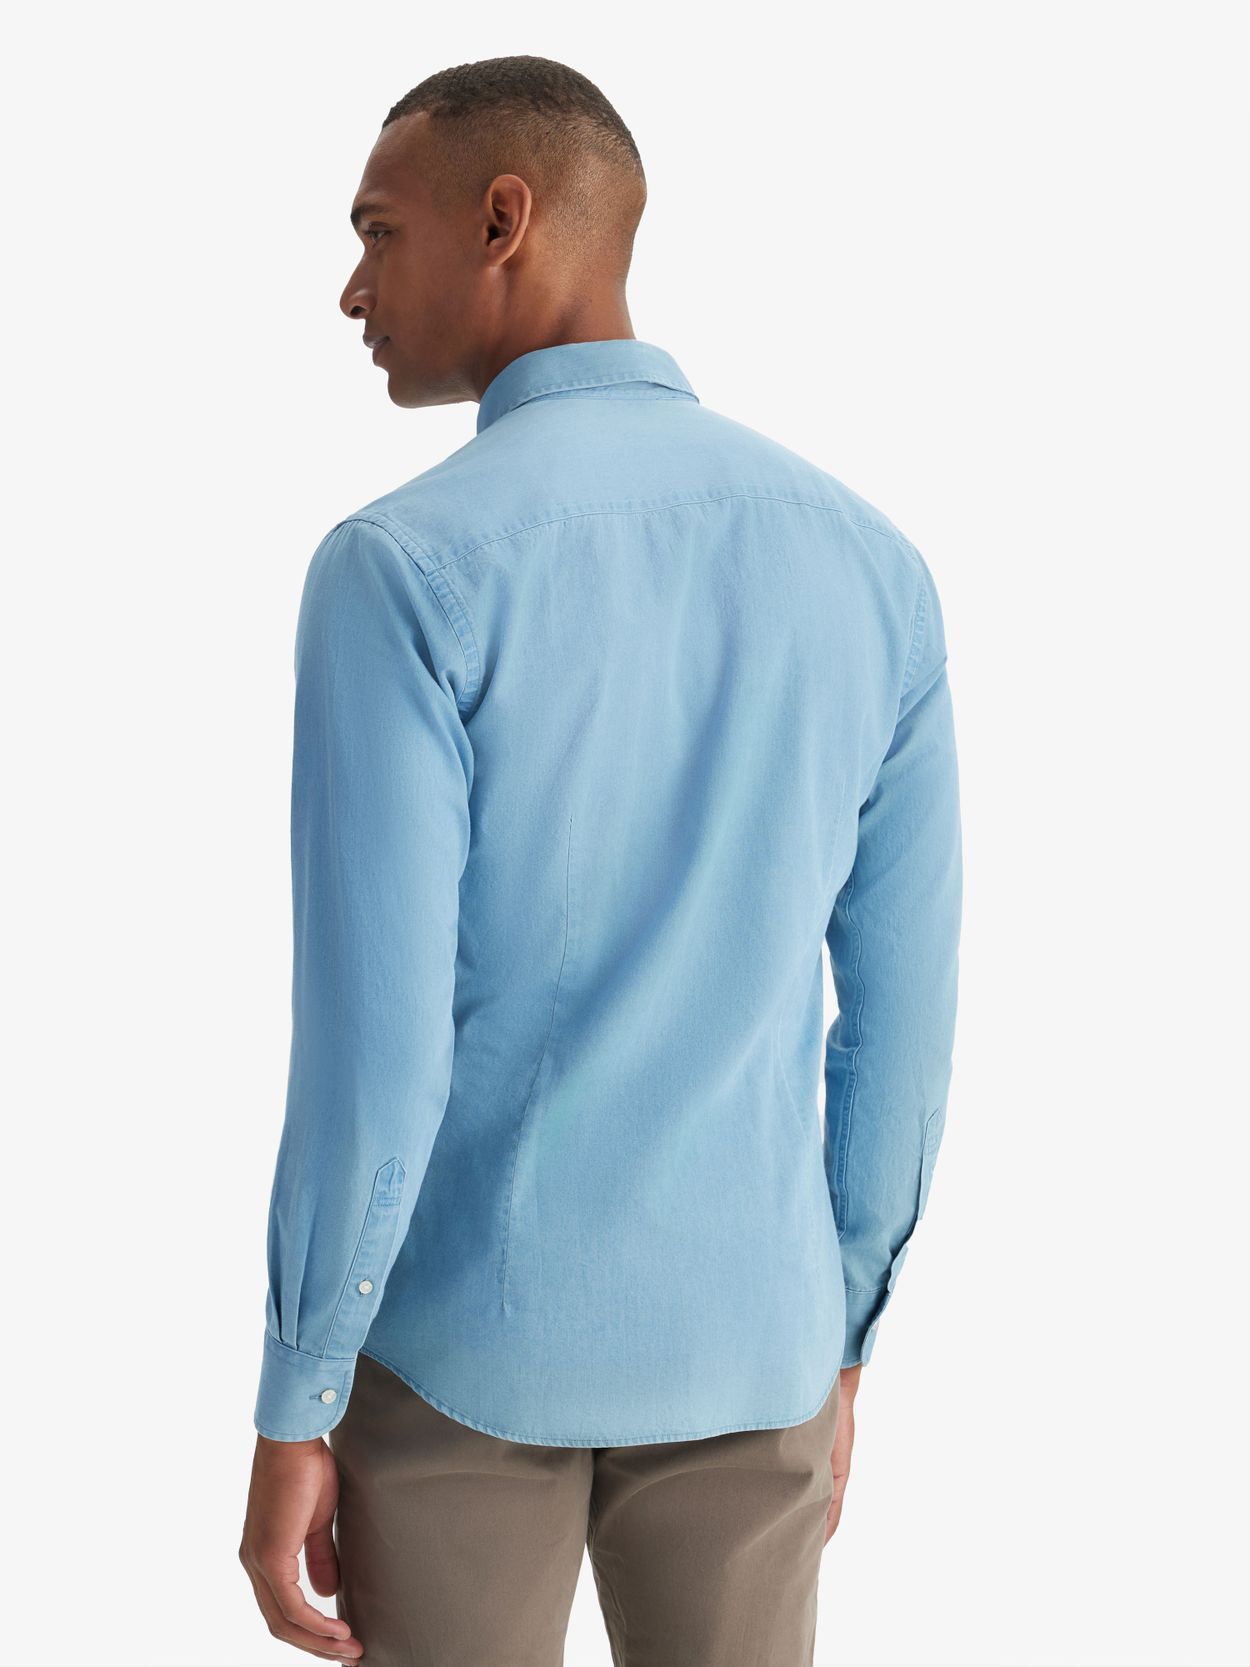 Blue Denim Full Sleeves Shirt|147024803